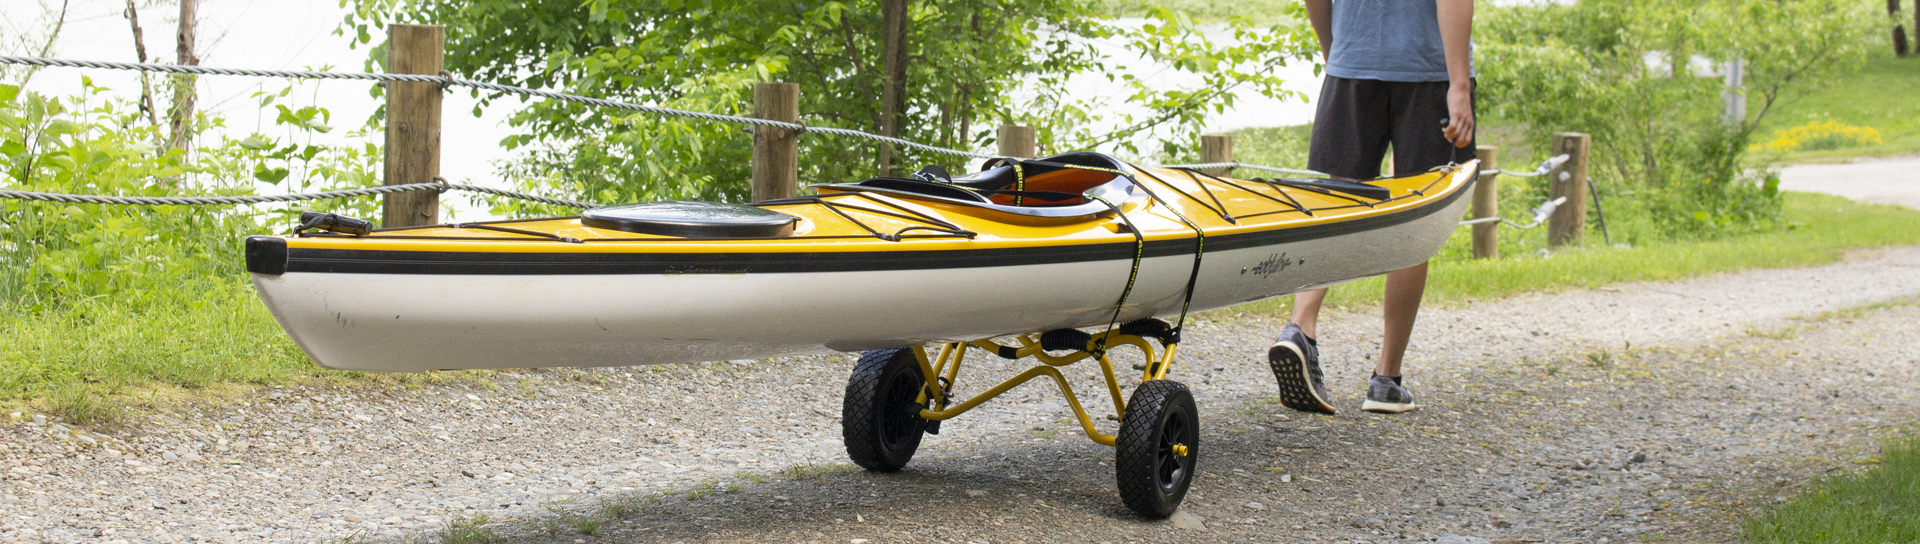 Suspenz, All-Terrain Super Duty Airless Cart [Kayak Angler Buyer's